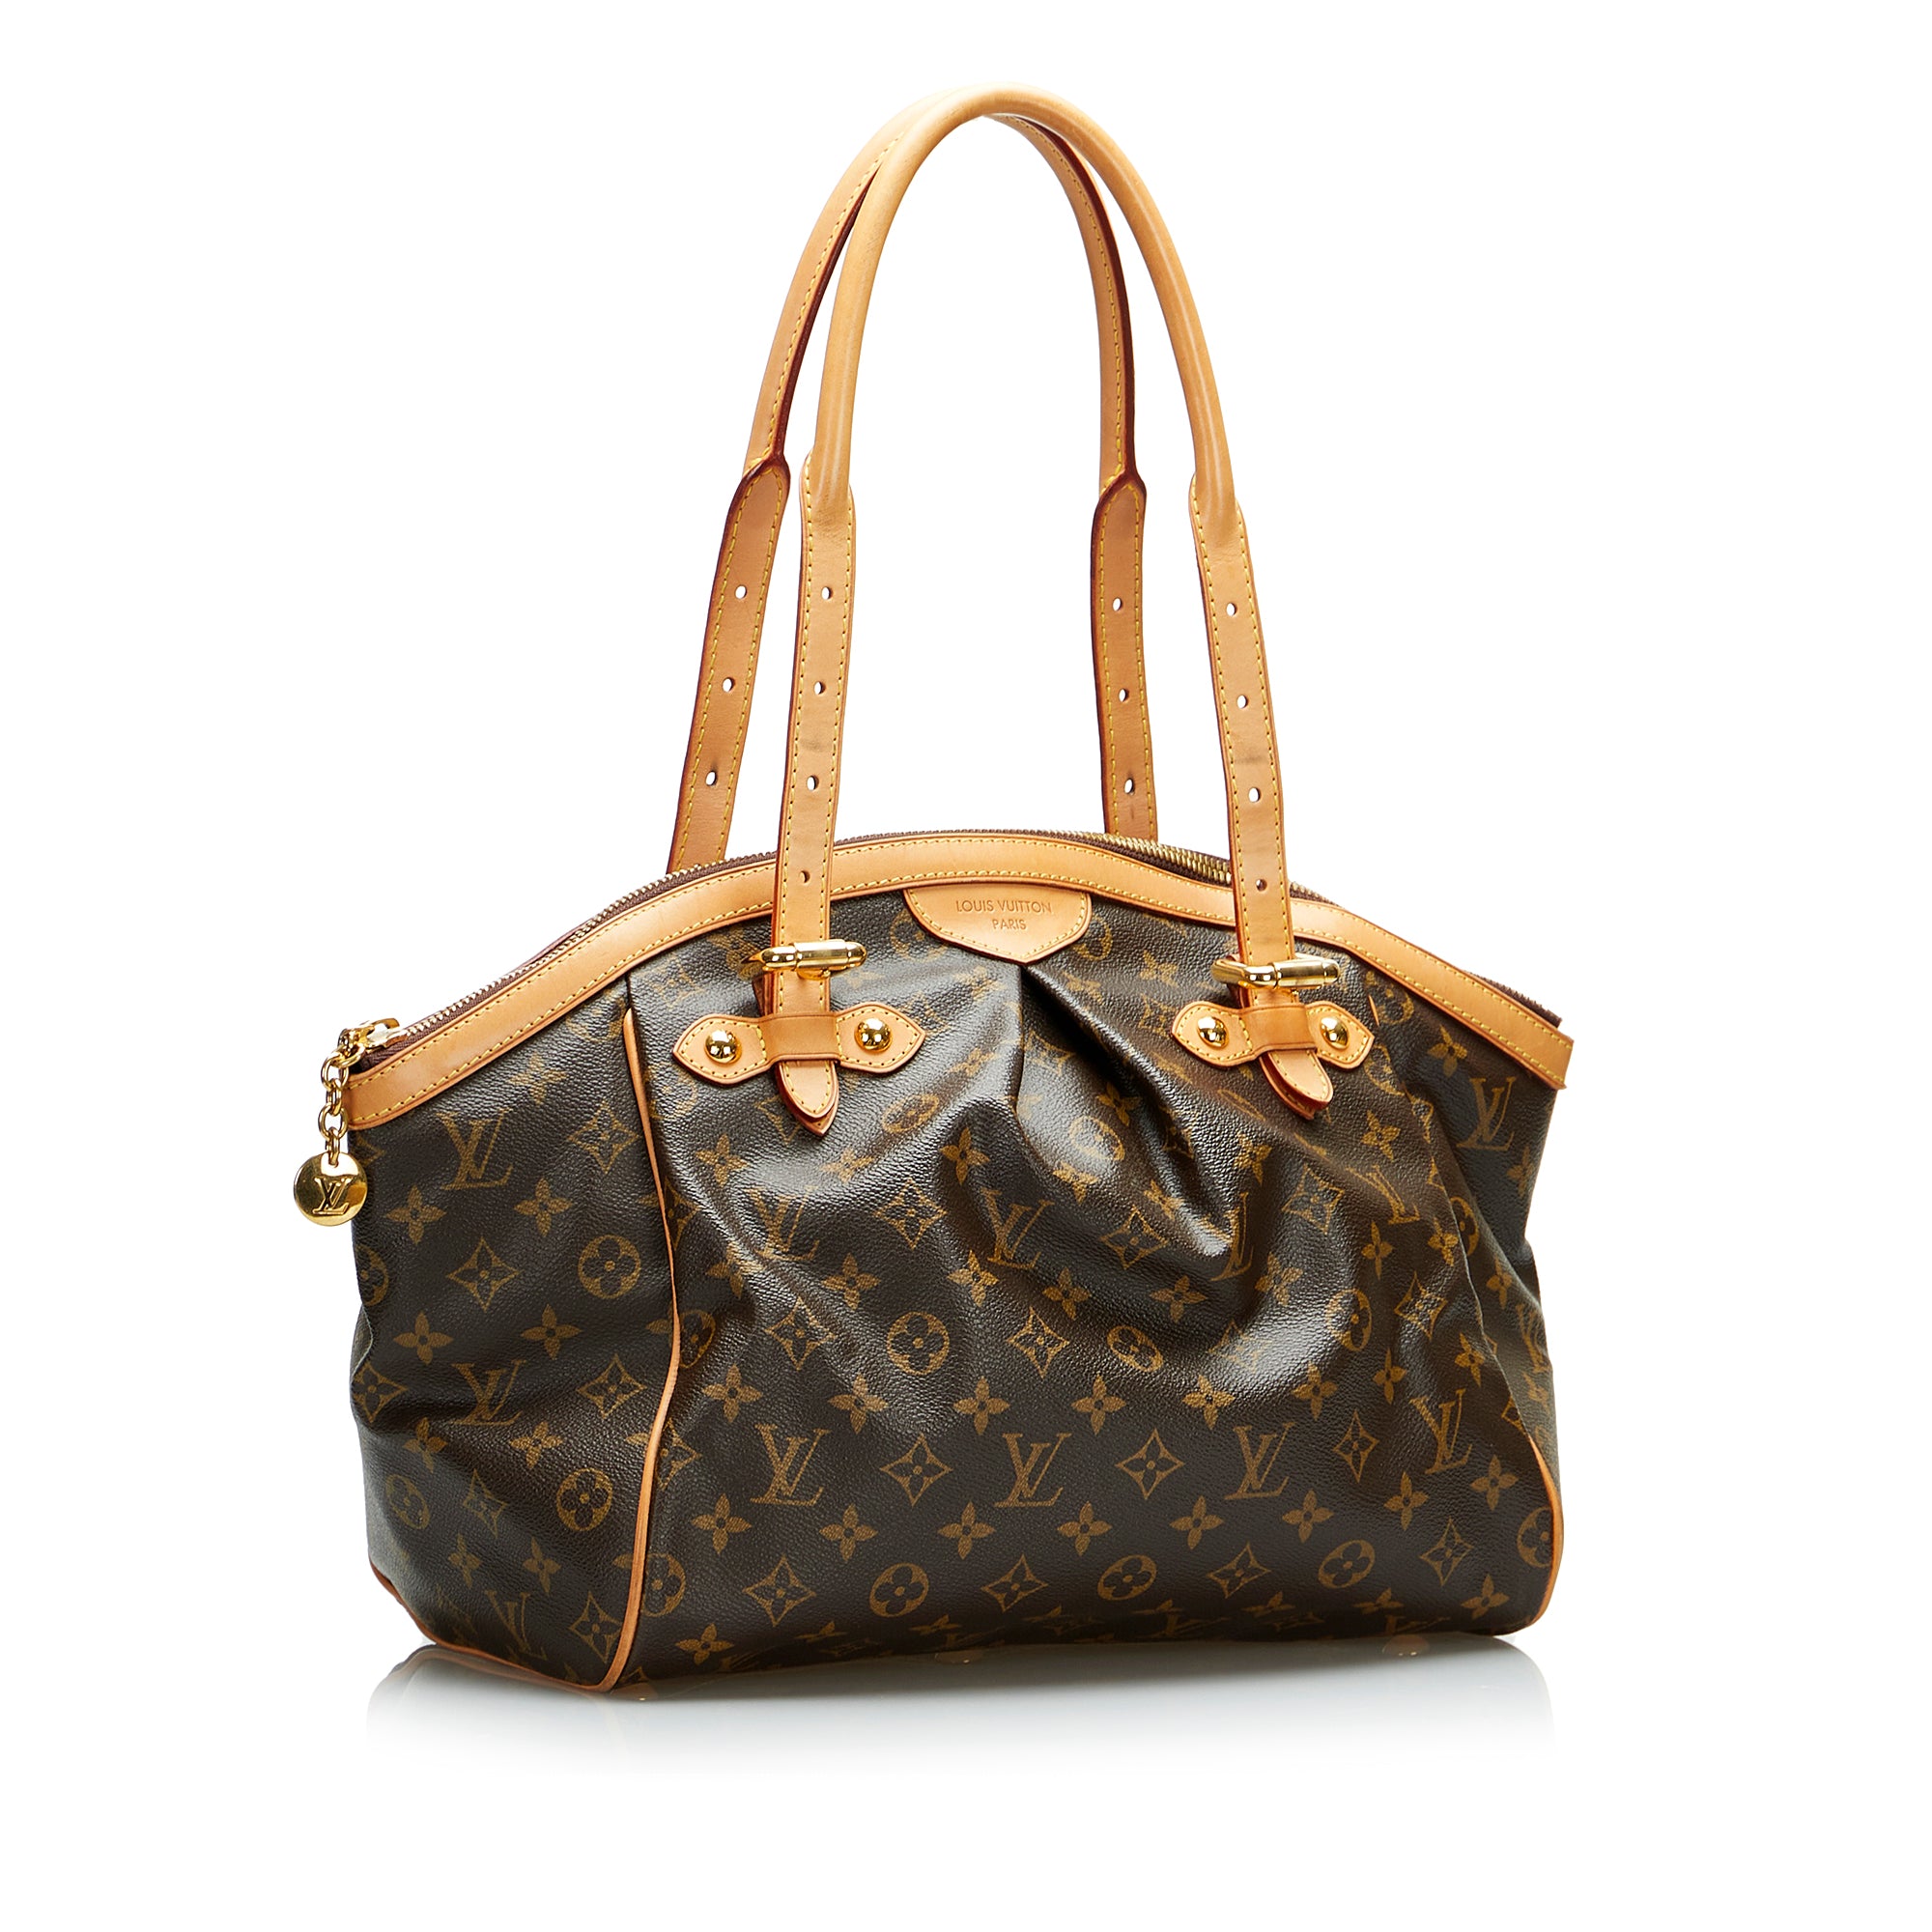 Authenticated Used Louis Vuitton Handbag Tivoli GM Brown Monogram